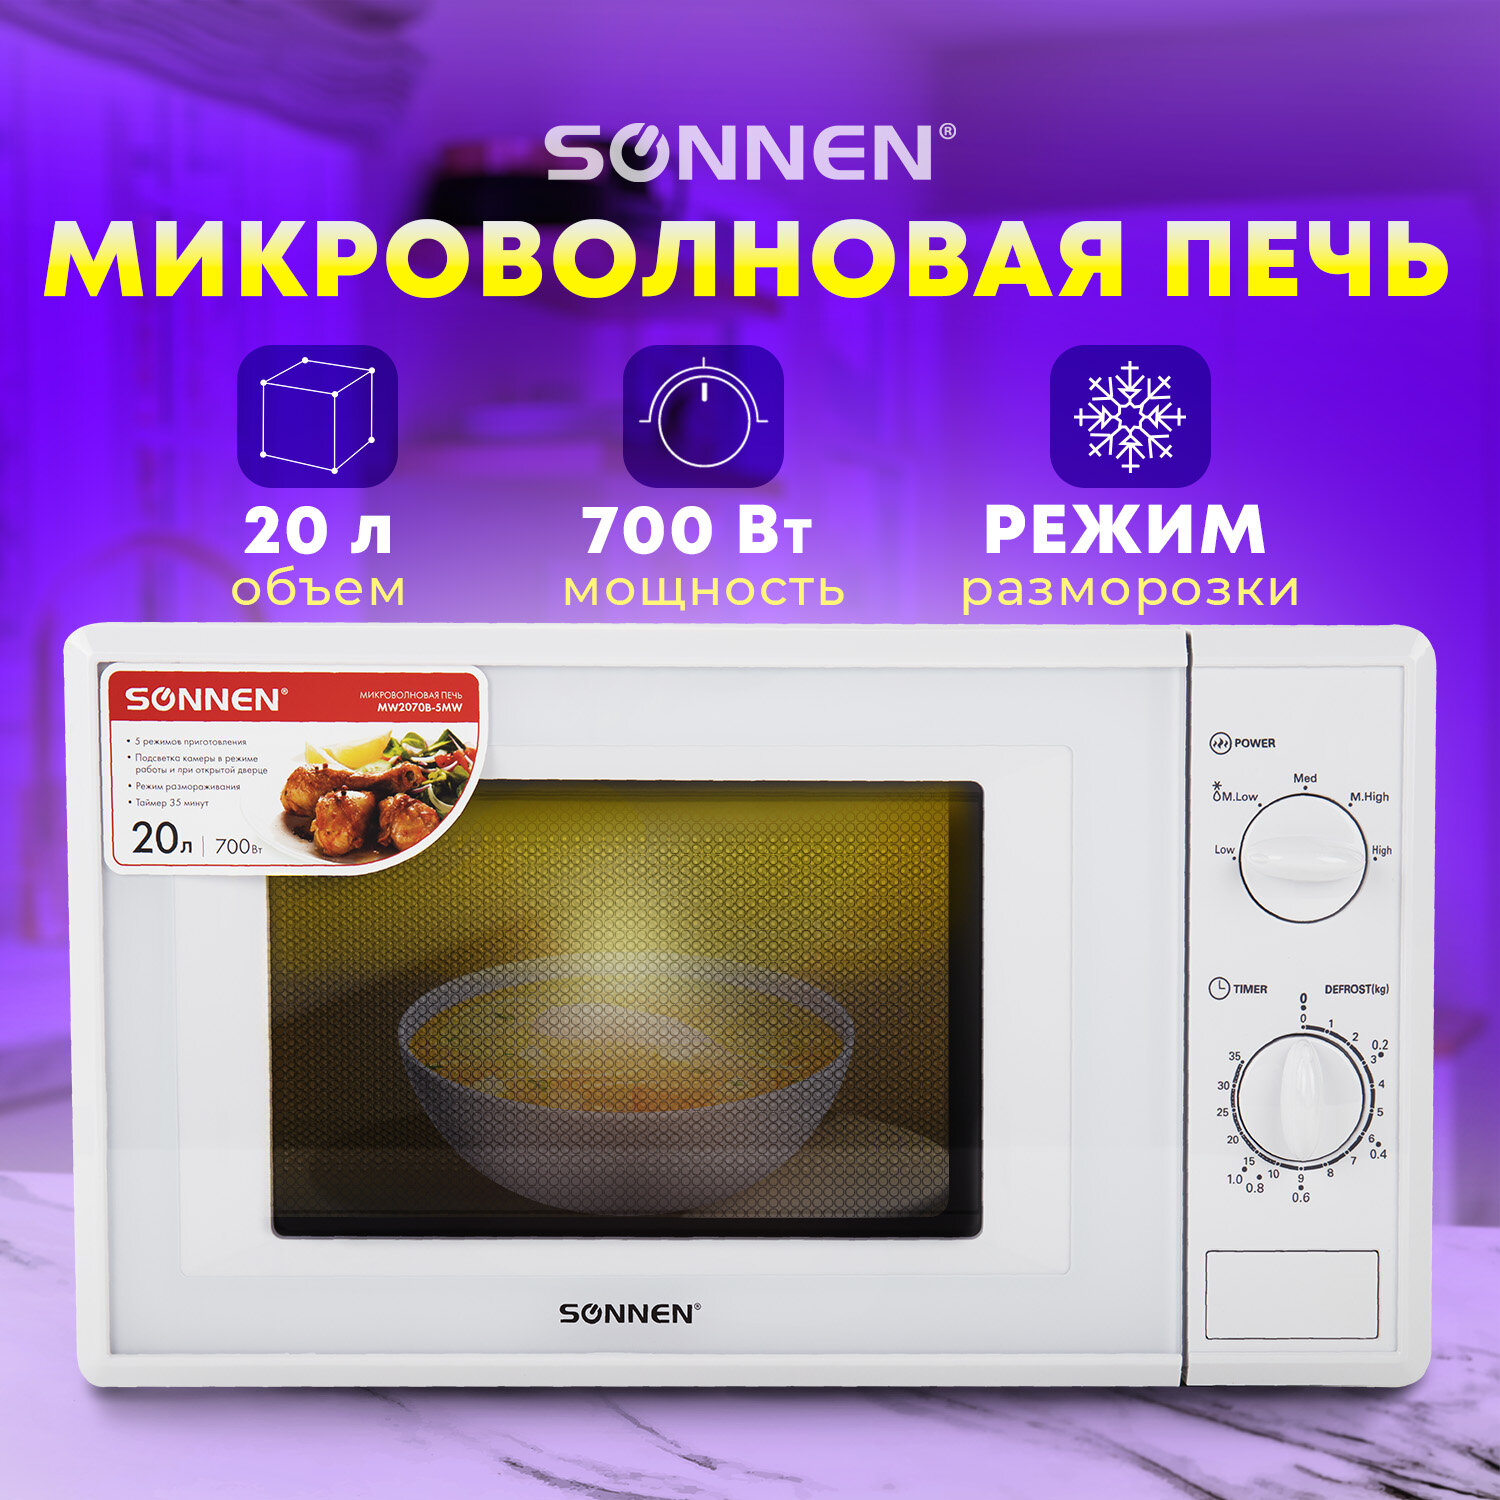 Sonnen Микроволновая печь SONNEN MW2070B-5MW, 20 л, 700 Вт, таймер, механическое управление, белая, 454654